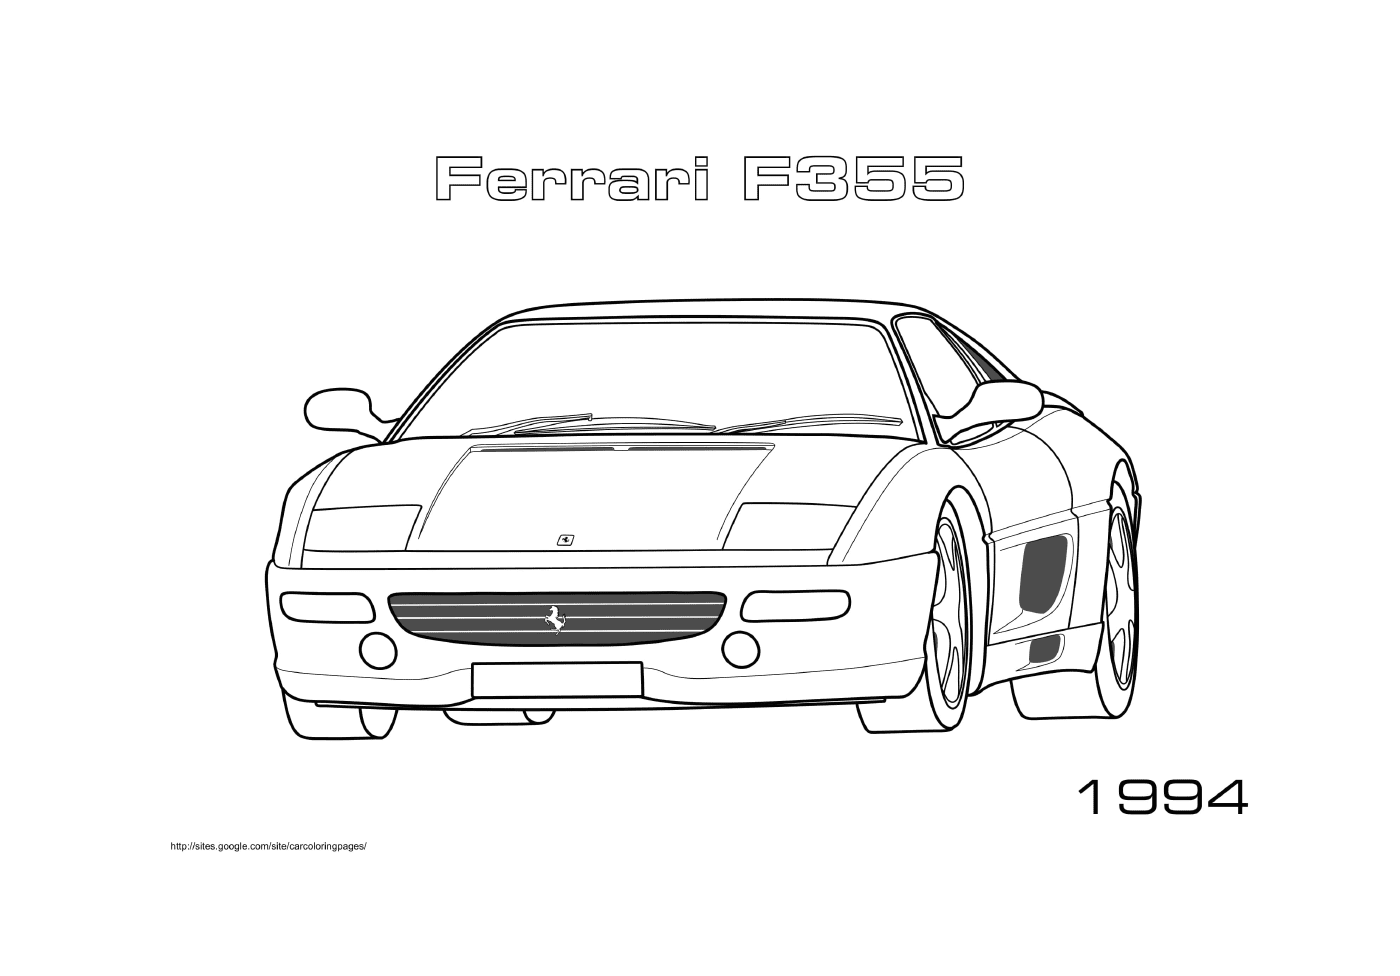  Un coche Ferrari F355 1994 